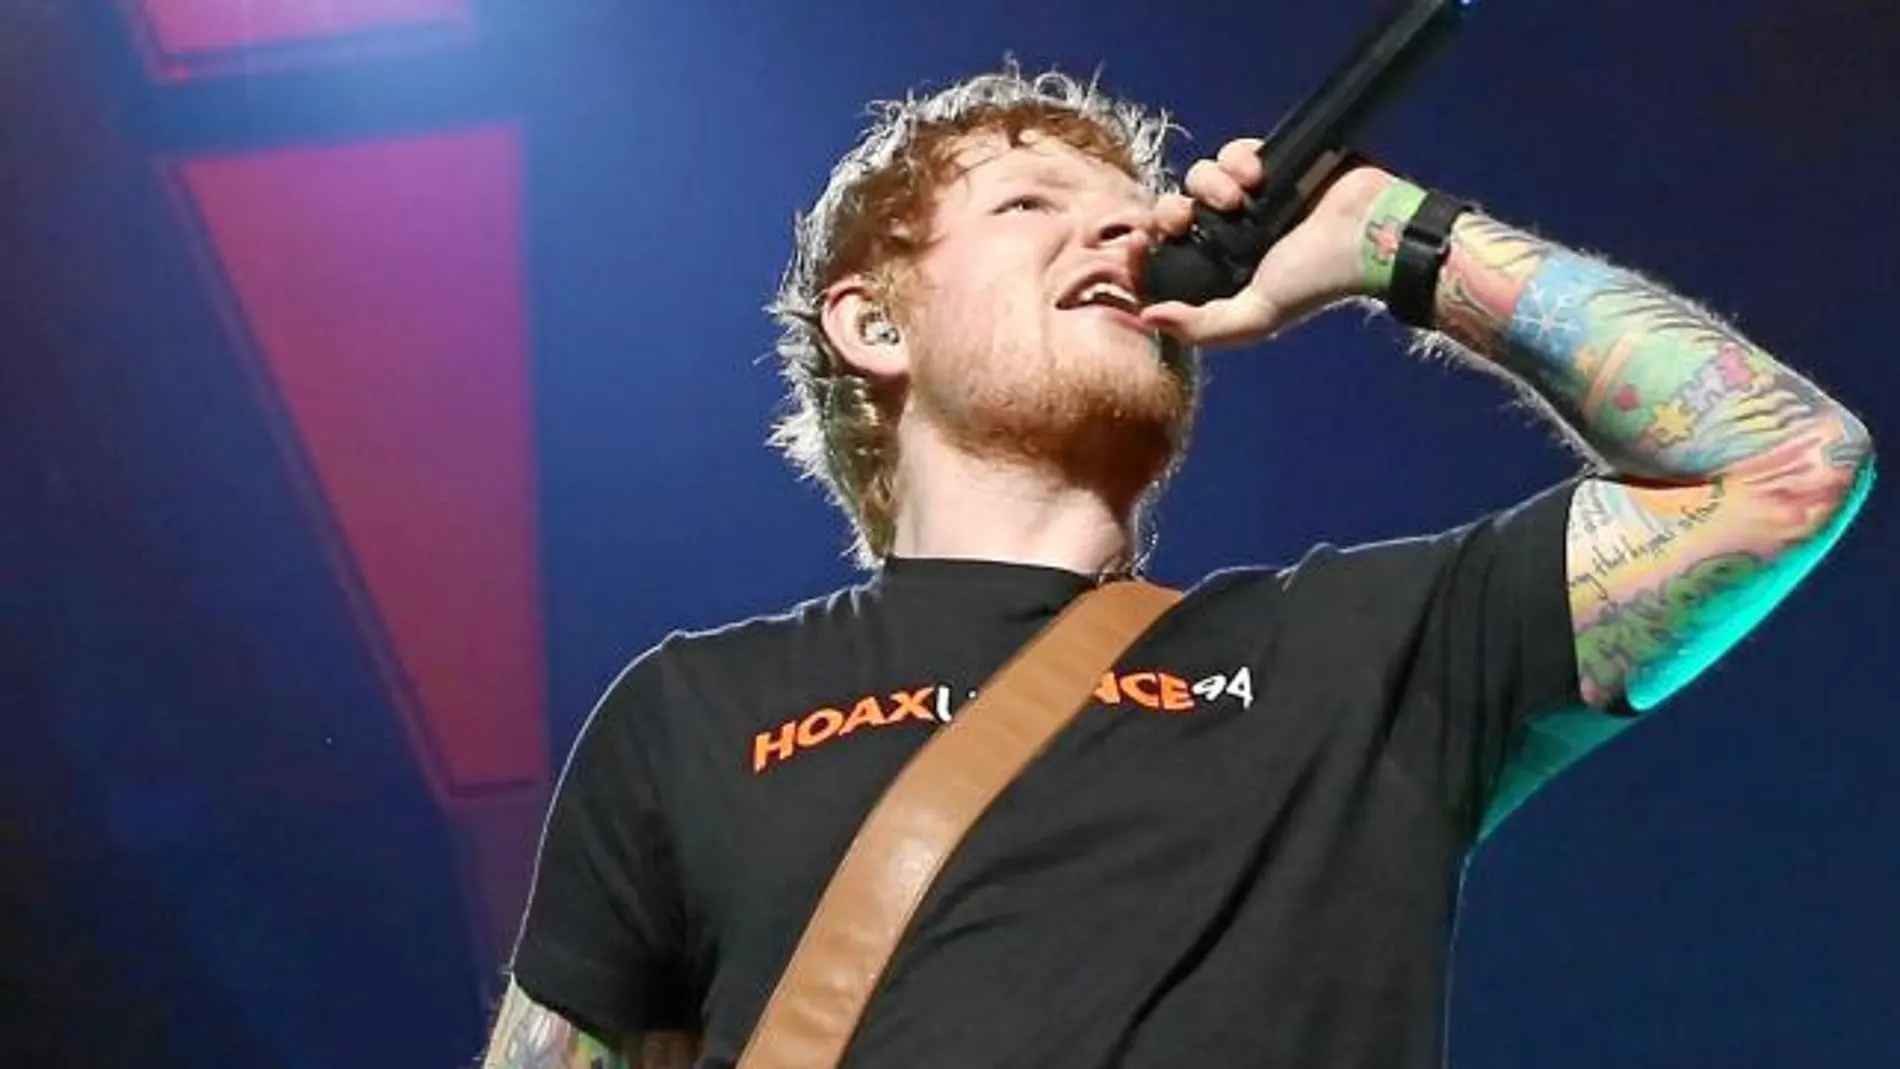 El cantante Ed Sheeran triunfó ayer en el WiZink Center.